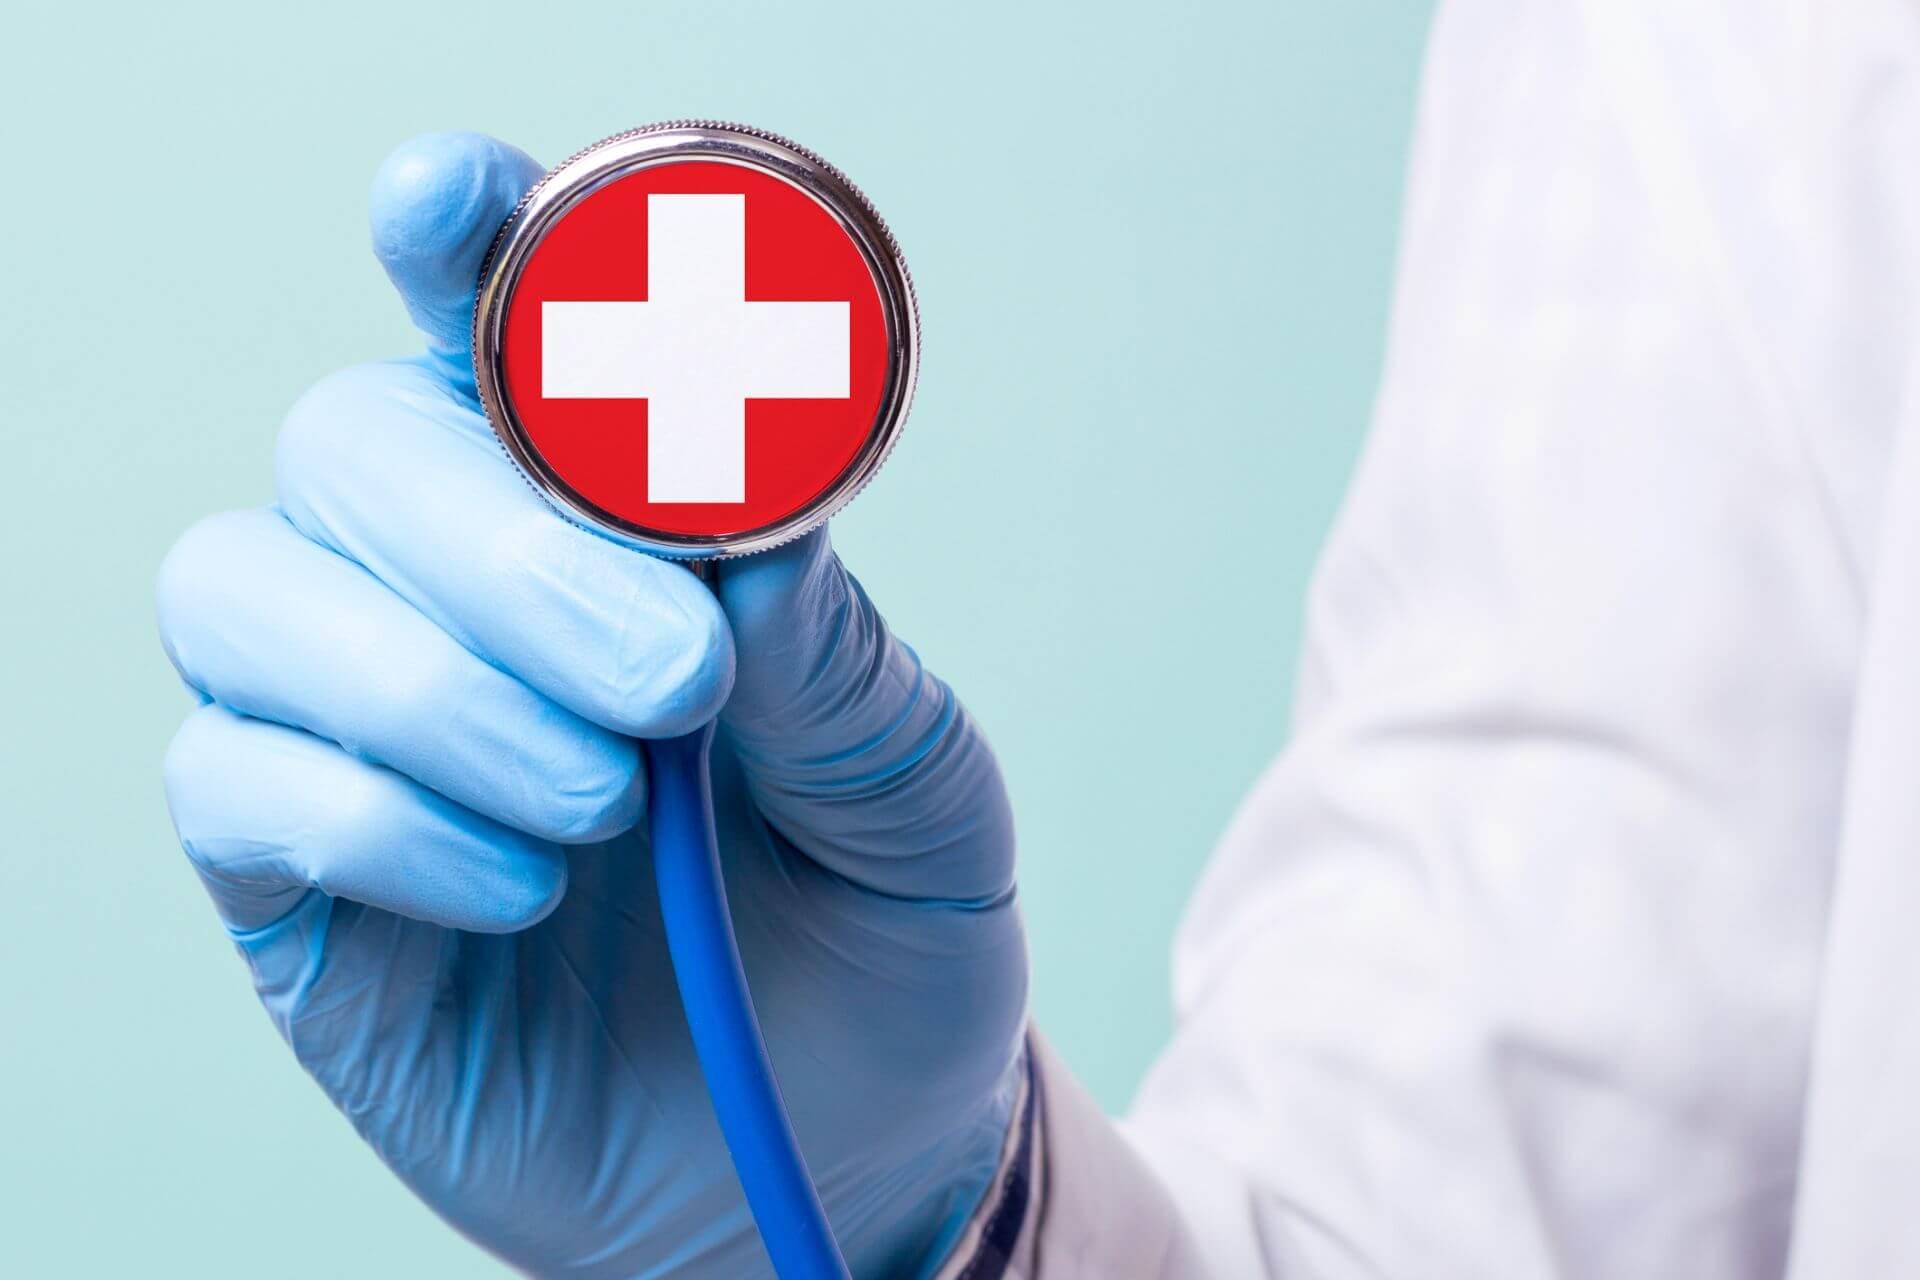 Das Gesundheitswesen in der Schweiz benötigt dringende Reformen.